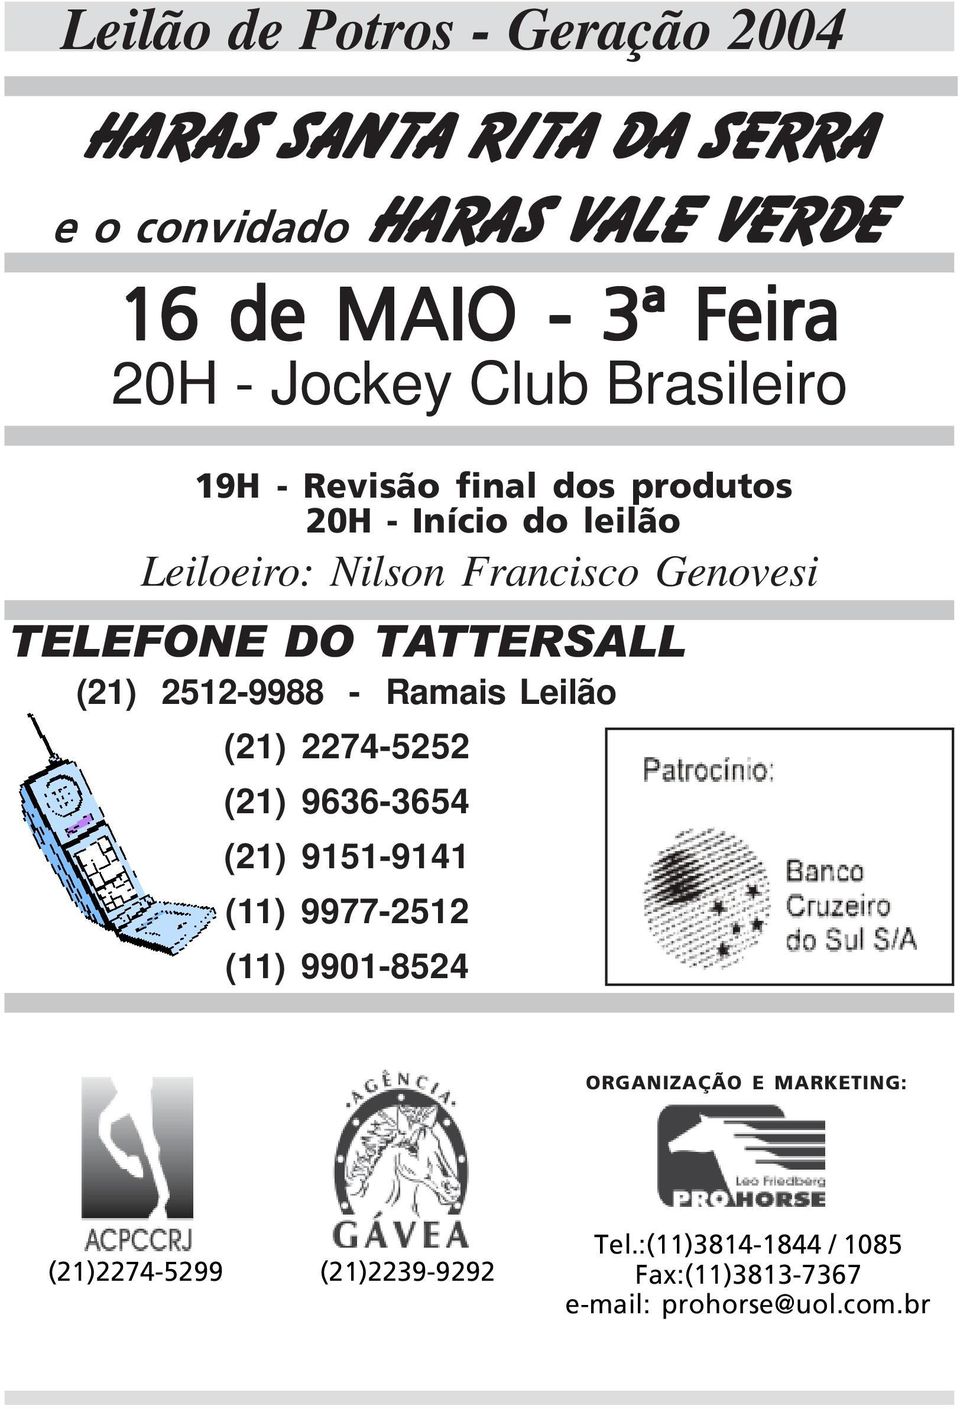 TELEFONE DO TATTERSALL (21) 2512-9988 - Ramais Leilão (21) 2274-5252 (21) 9636-3654 (21) 9151-9141 (11) 9977-2512 (11)